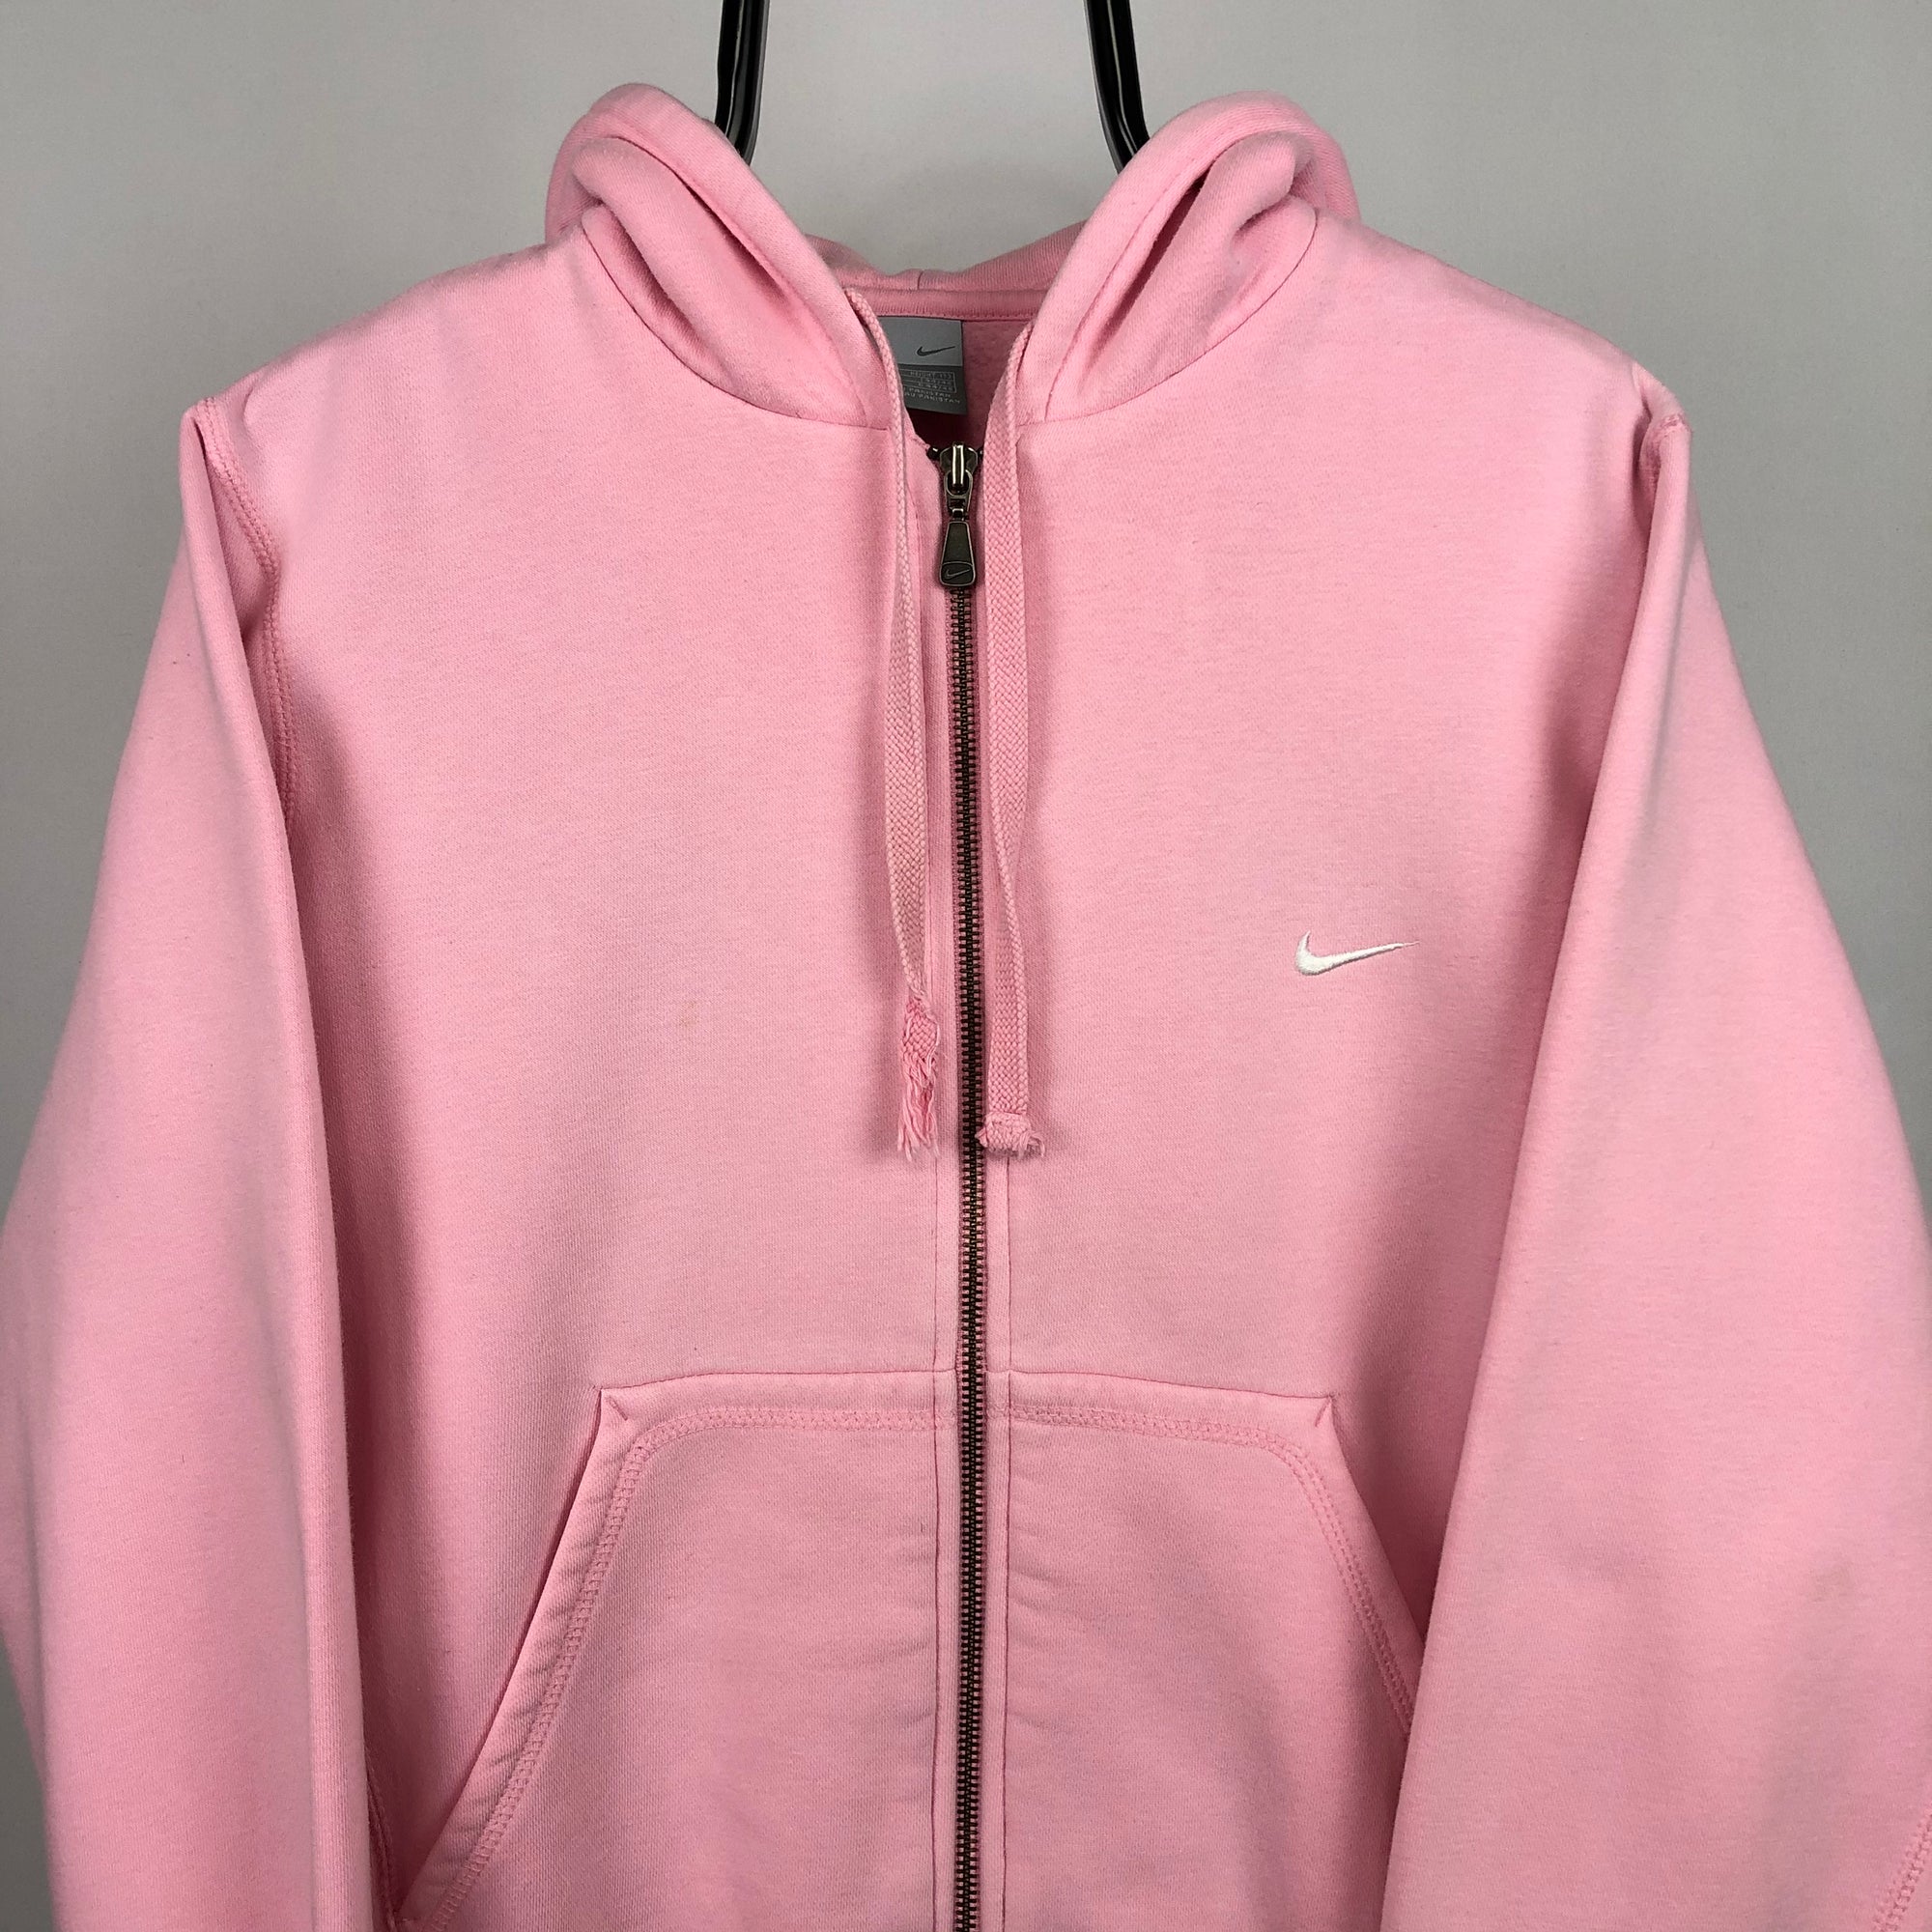 Vintage Nike Zip Up Hoodie in Baby Pink - Men's Small/Women's Medium